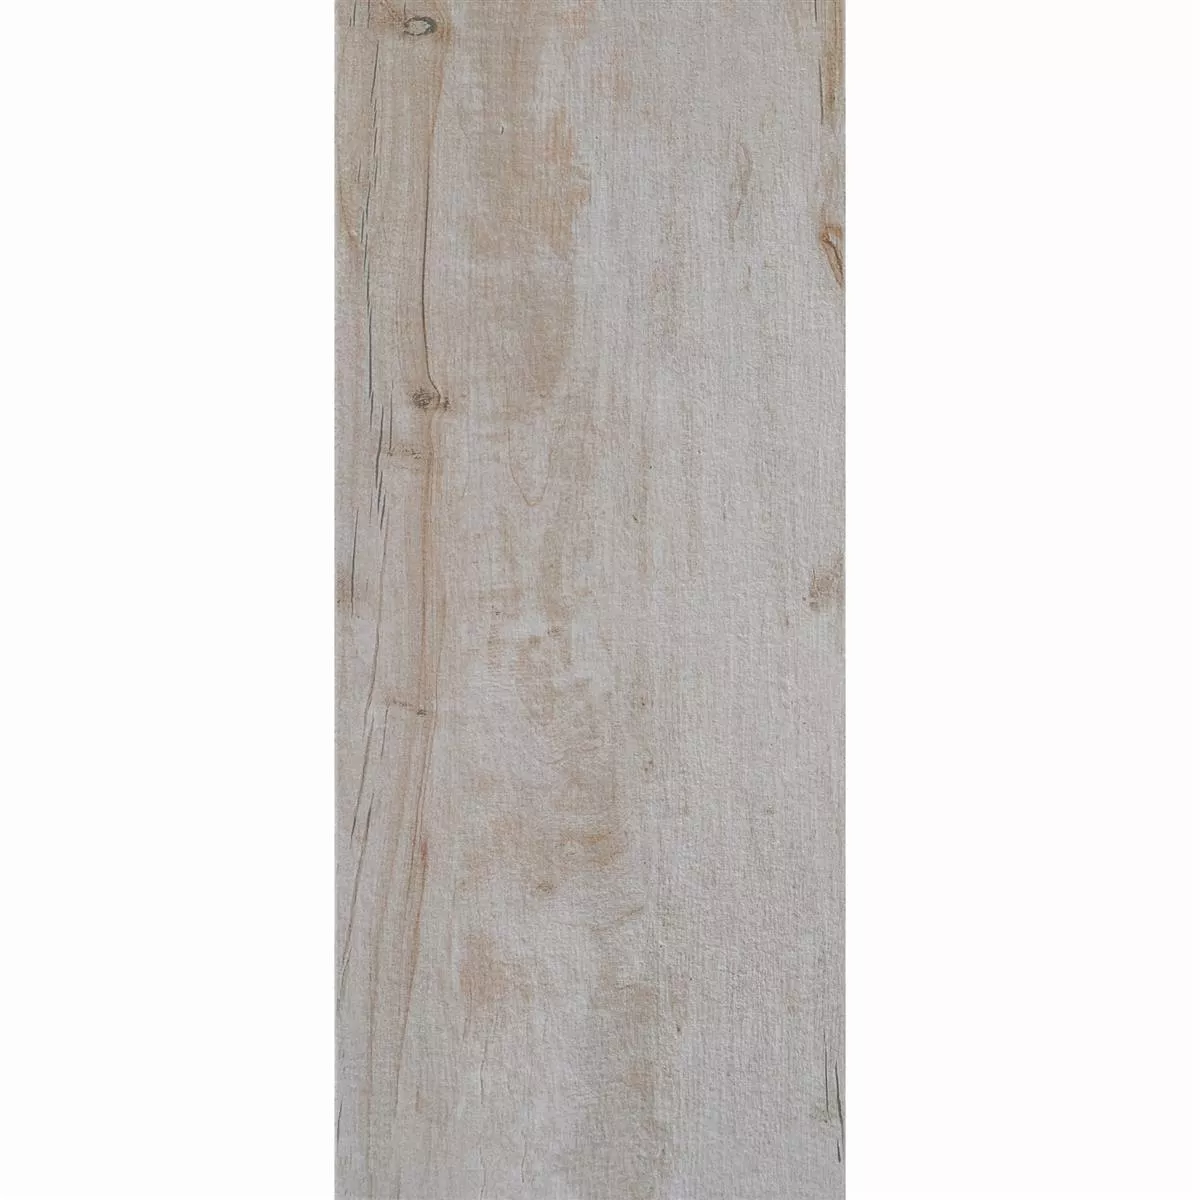 Terrassenplatten Keystone Holzoptik 30x120cm Natural